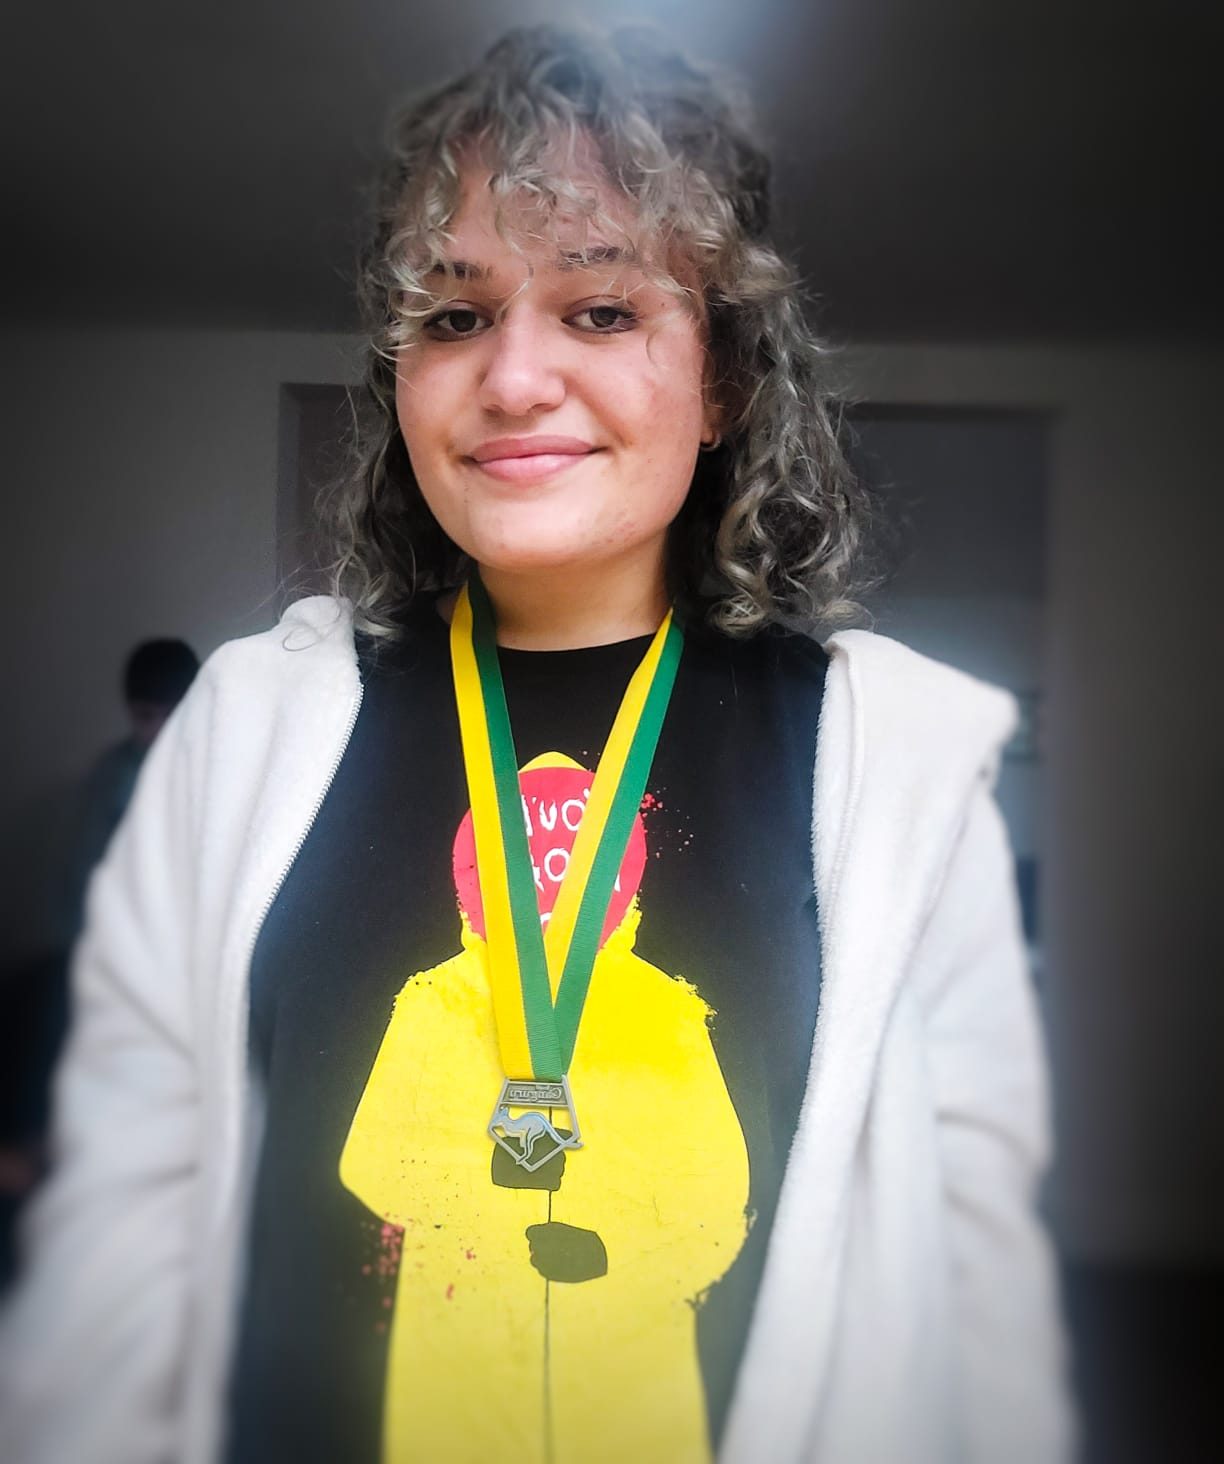  Estudante paranaense ganha medalha em concurso internacional de matemática